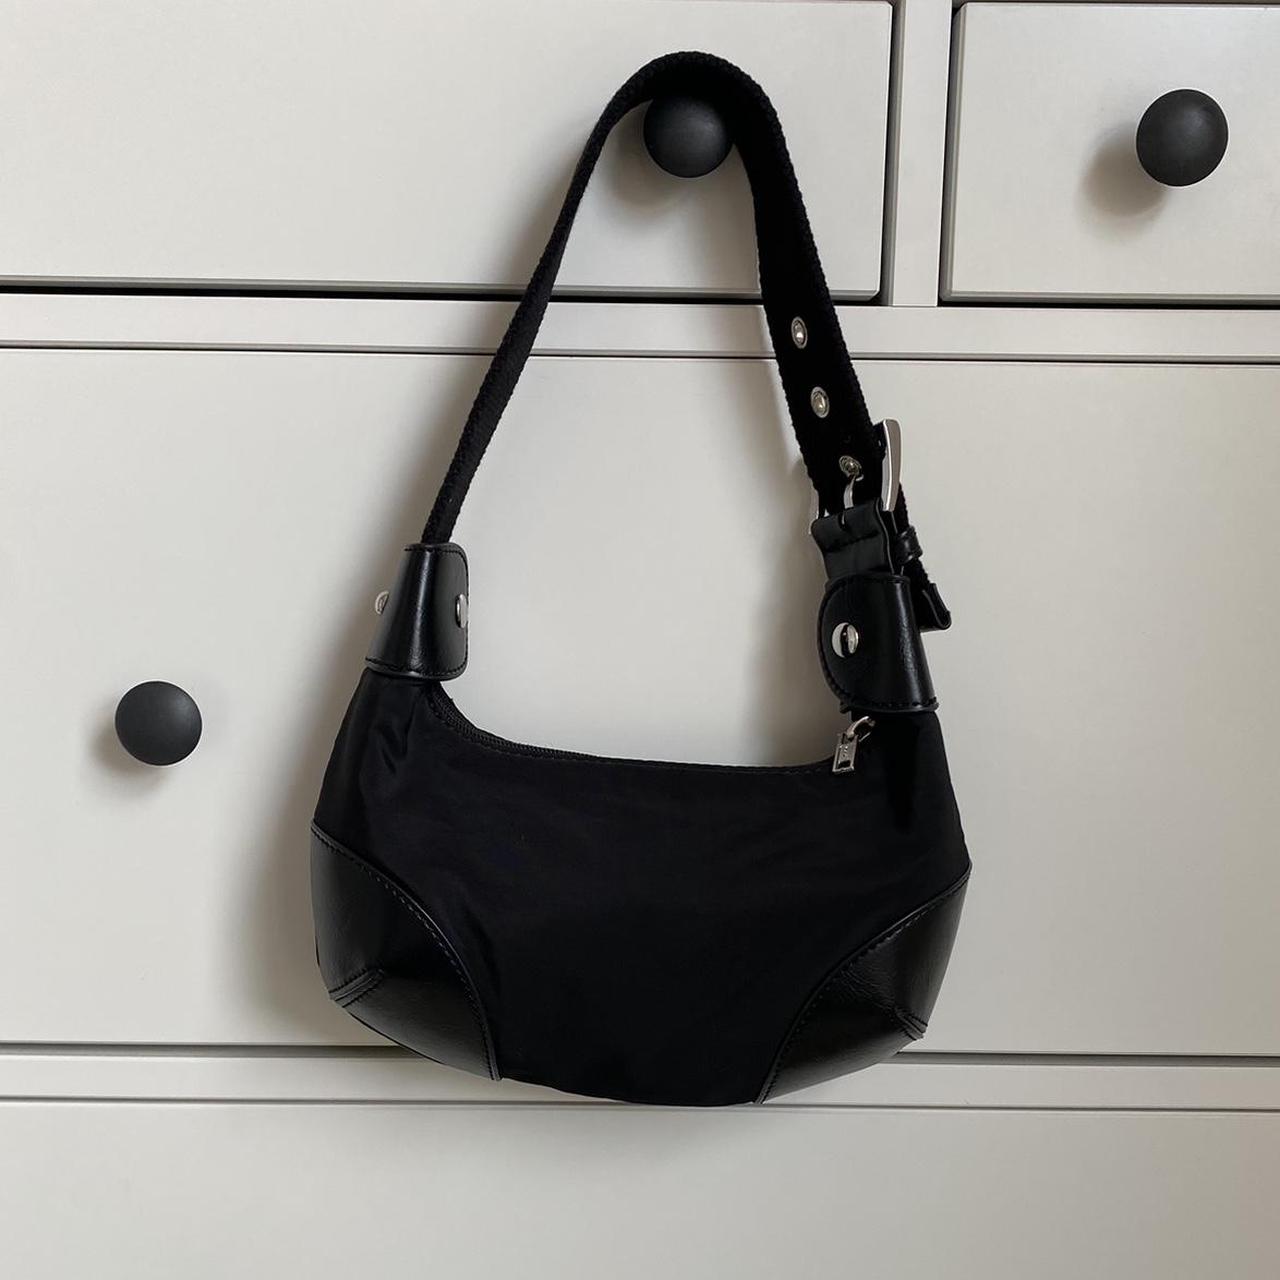 Brandy melville black nylon shoulder bag with silver... - Depop